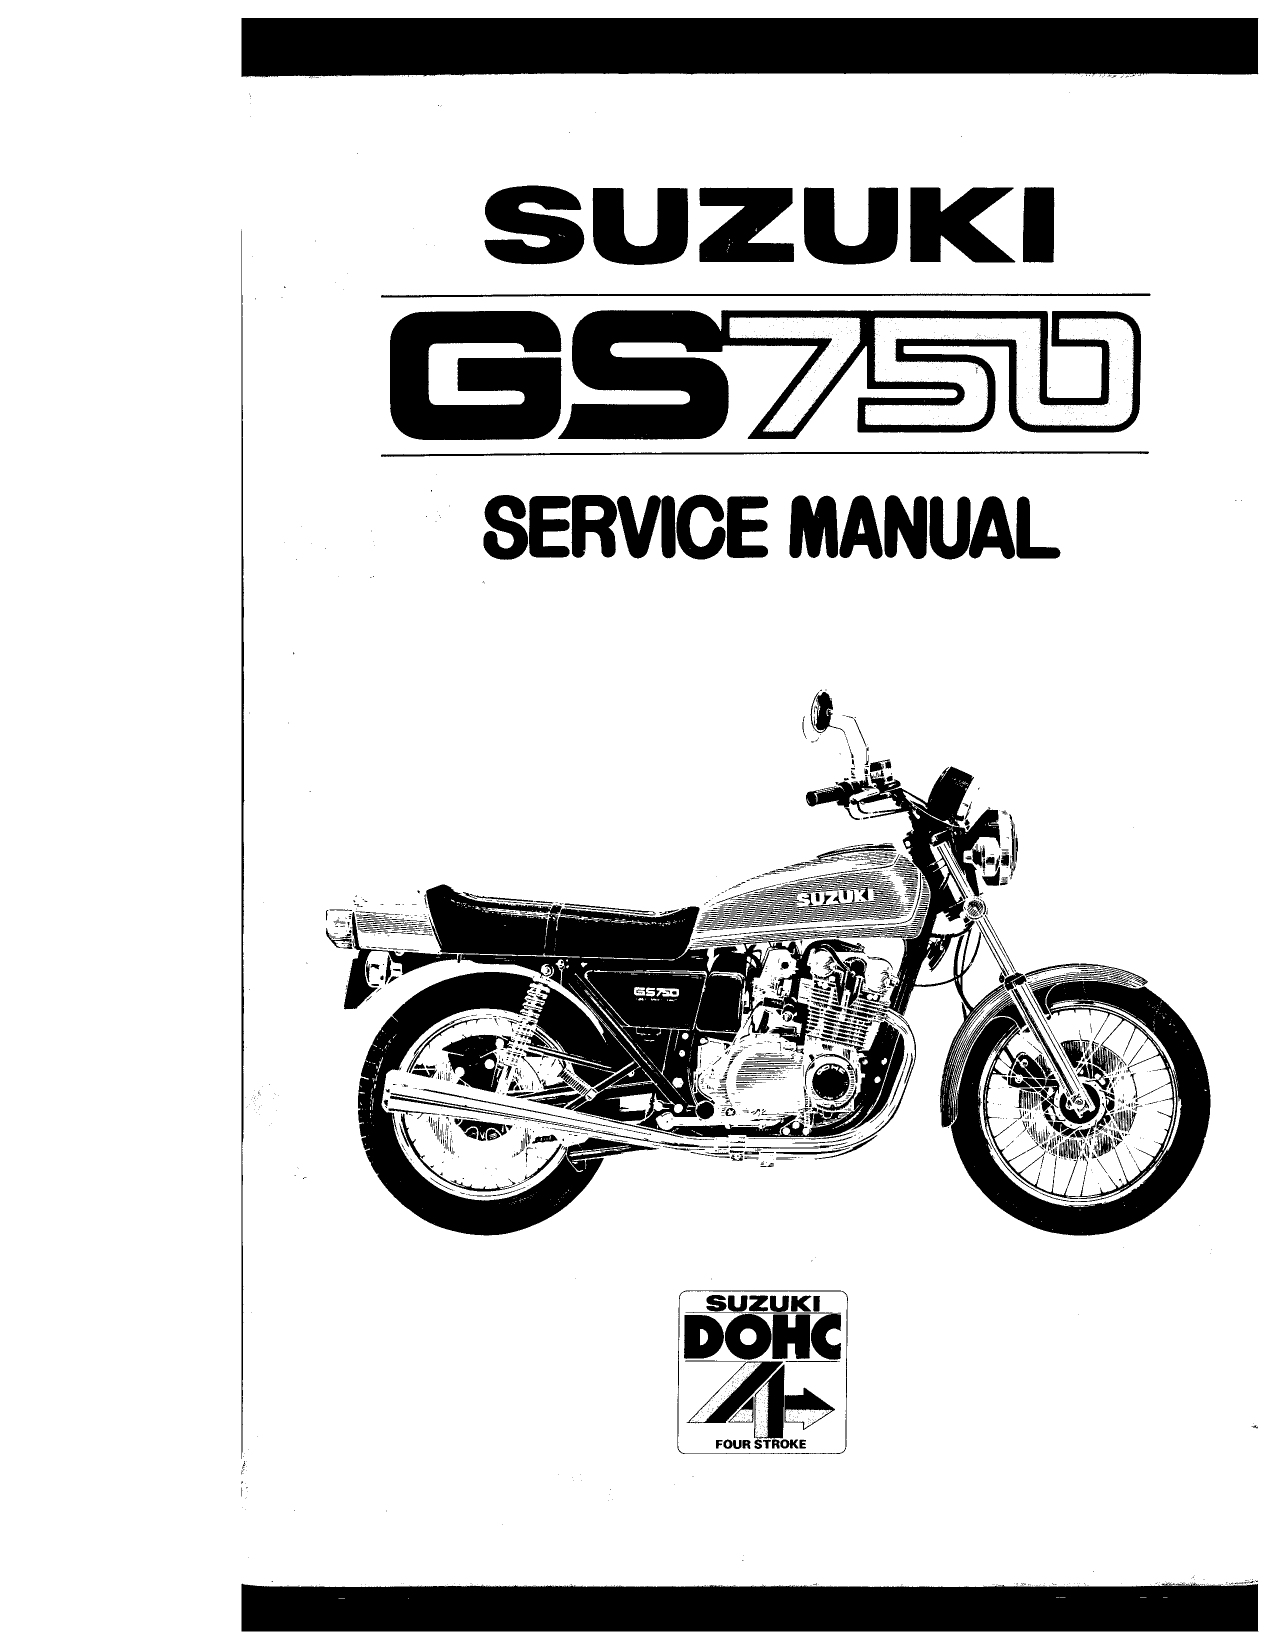 1976-1979 Suzuki GS750 service manual Preview image 6